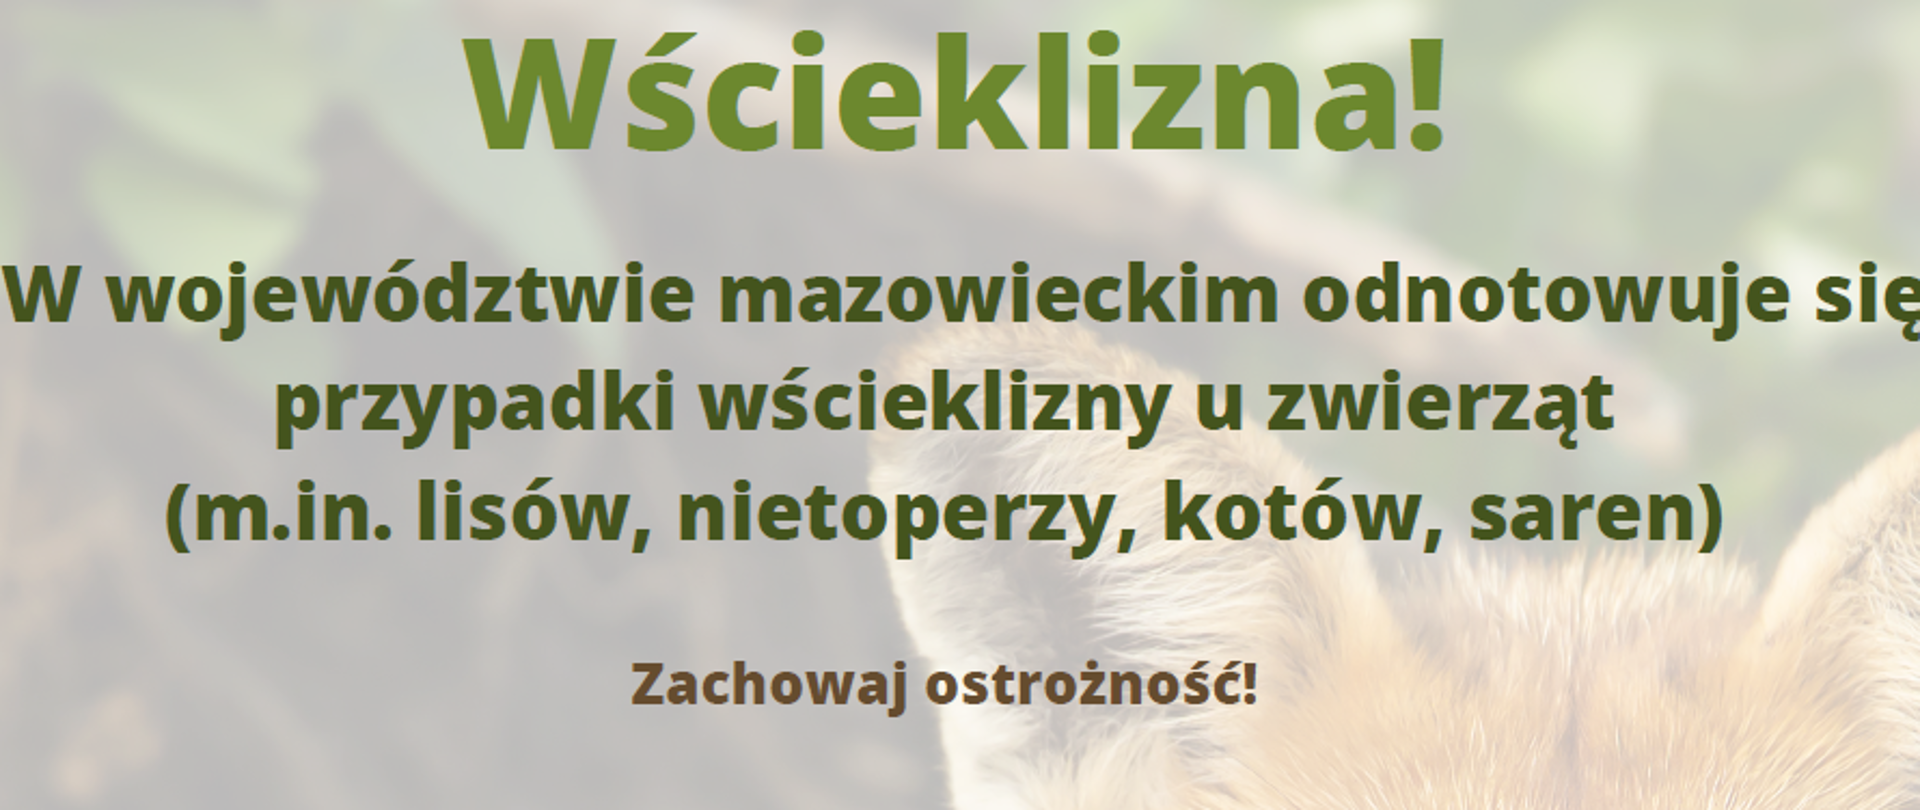 W województwie mazowieckim odnotowuje się przypadki wścieklizny u zwierząt (m.in. lisów, nietoperzy, kotów, saren)